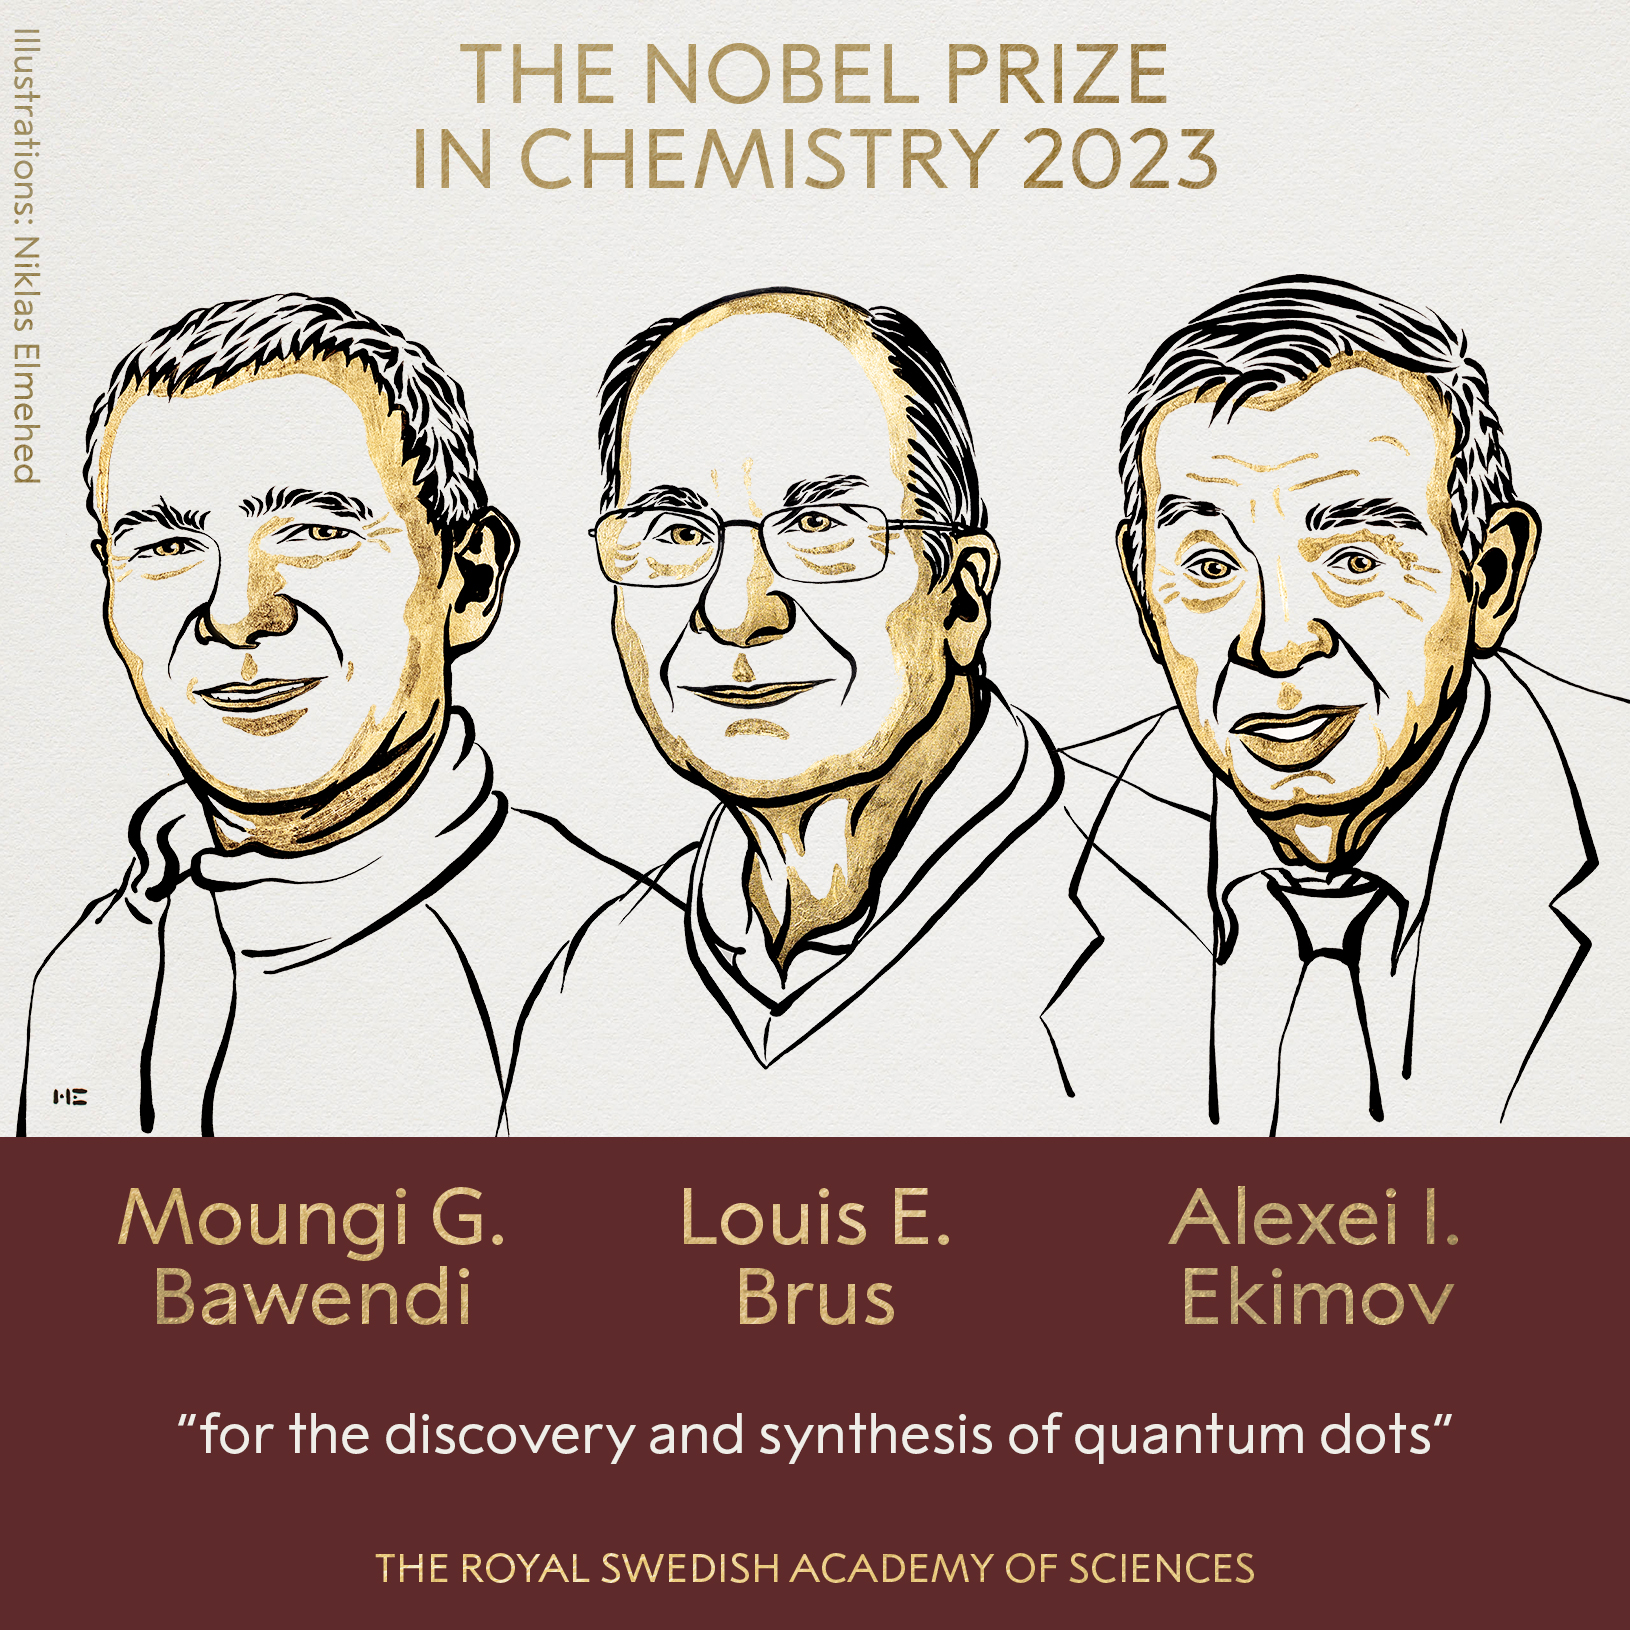 3 scientists awarded 2023 Nobel Prize in Chemistry